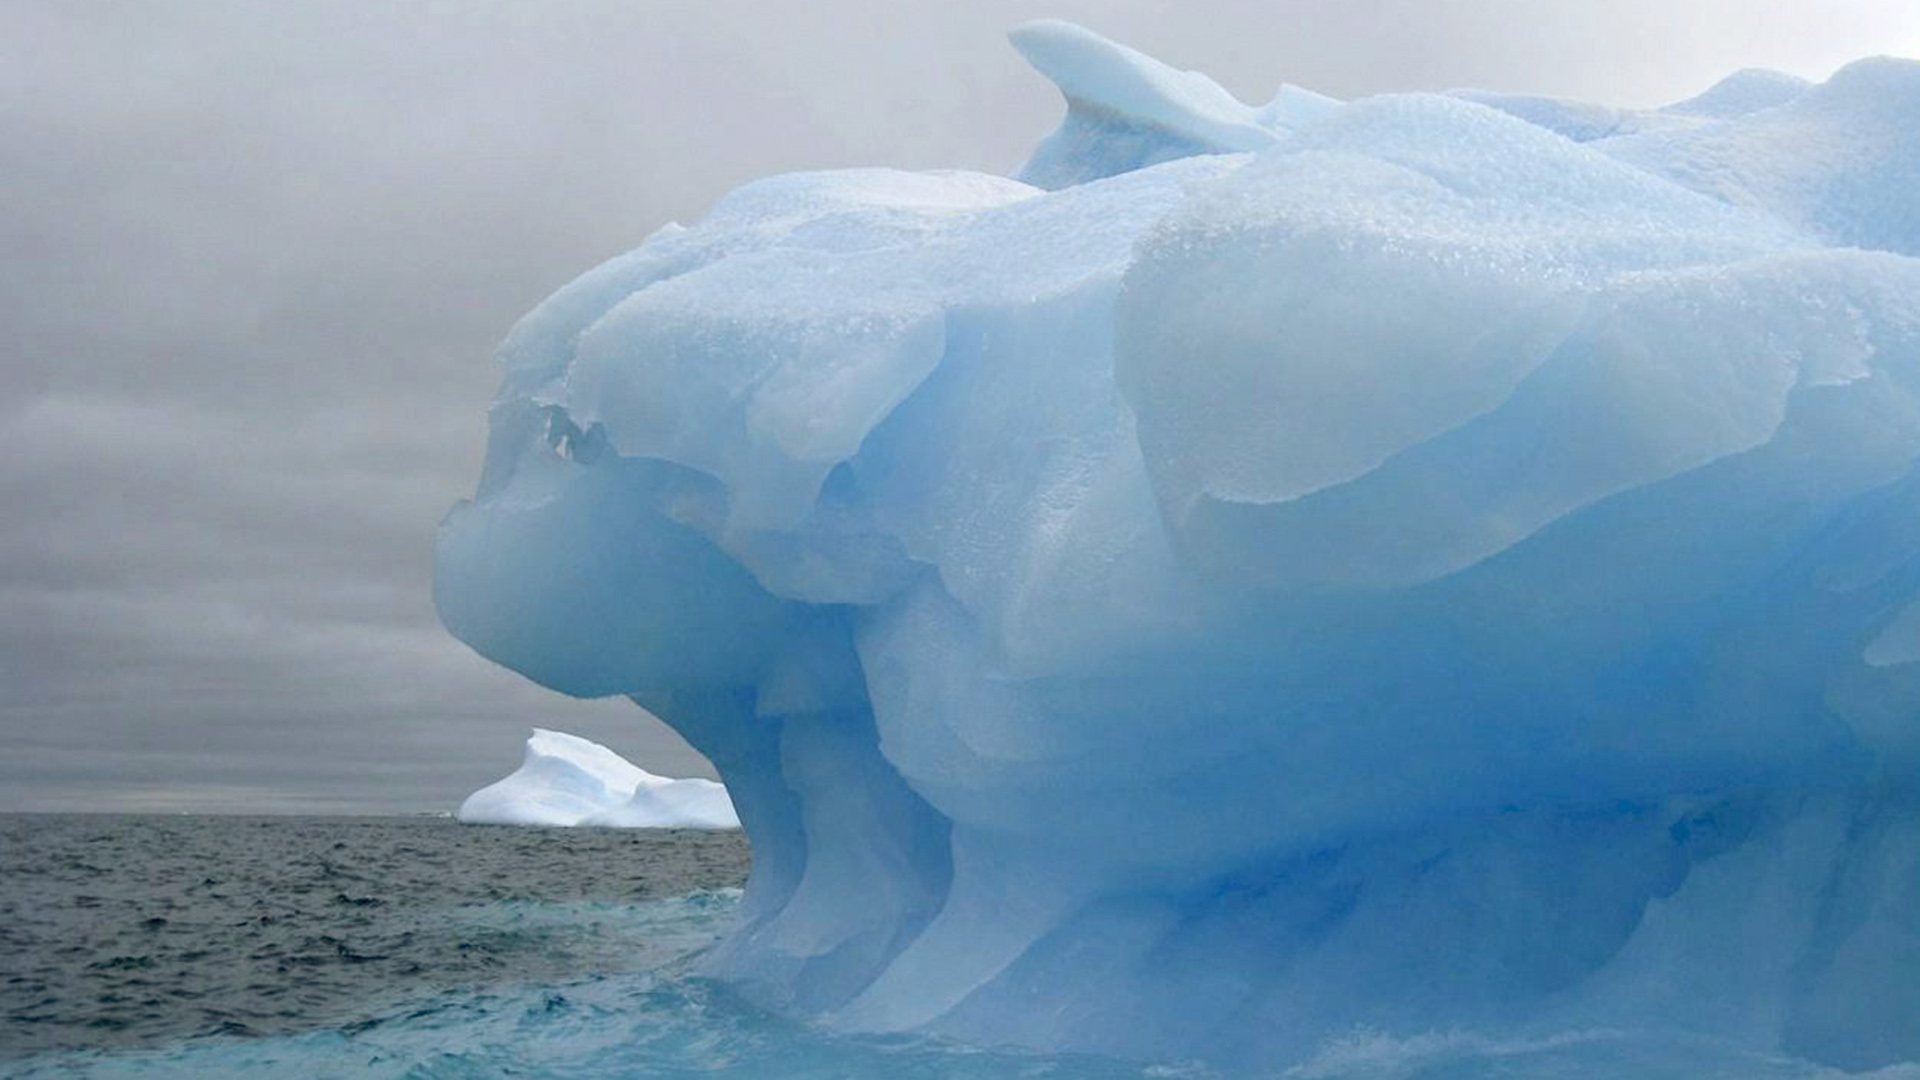 Ein undatiertes, vom Obersten Rat für wissenschaftliche Untersuchungen (CSIC) veröffentlichtes Bild zeigt einen riesigen blauen Eisberg, der im chilenischen Weddellmeer treibt. | picture alliance / dpa